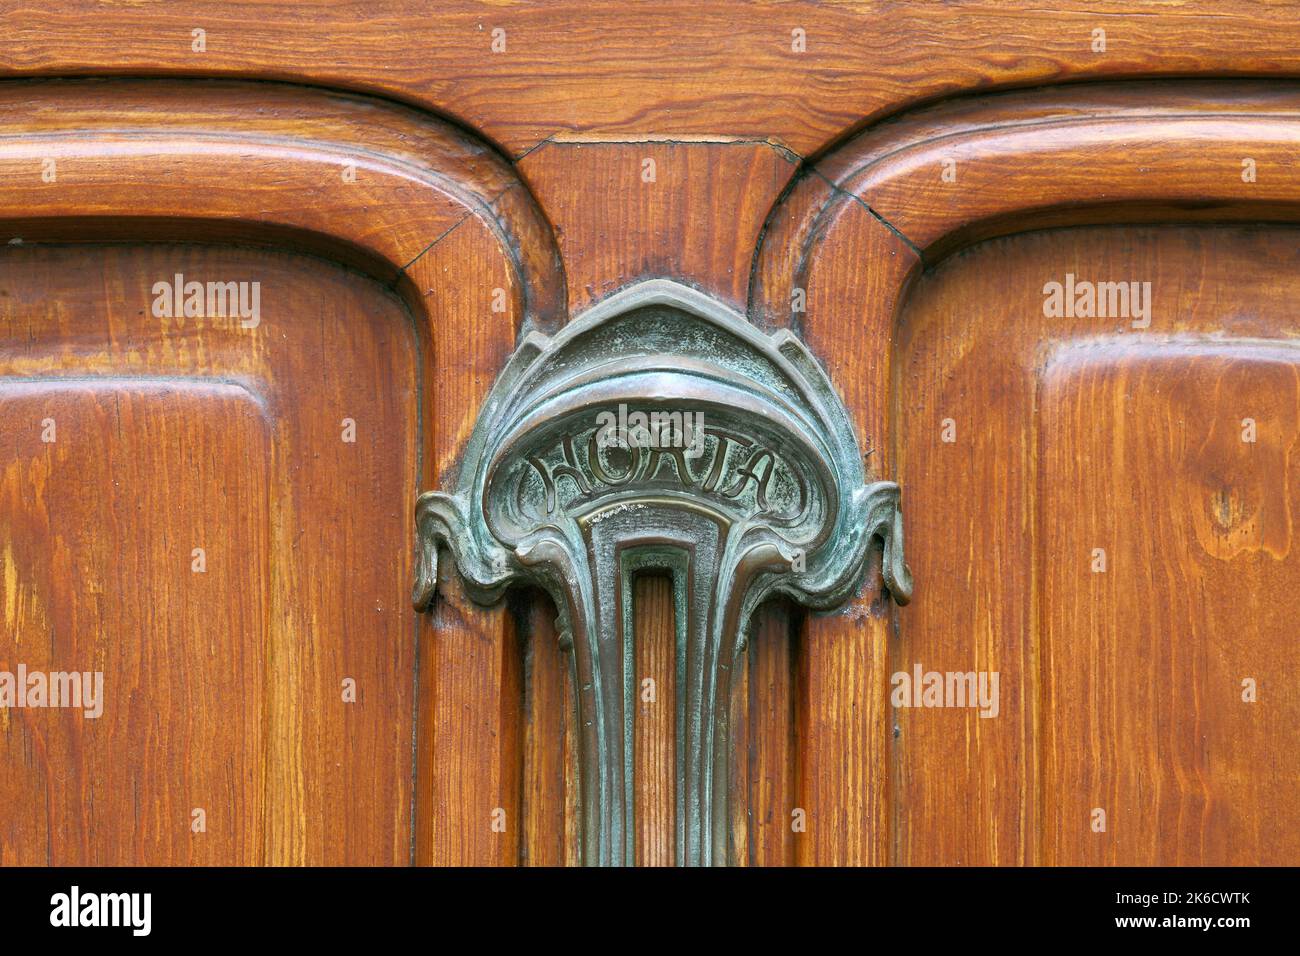 Un atomizador de puertas de estilo Art Nouveau, grabado con el nombre de Horta, en una puerta exterior del Museo de Horta, la casa y estudio del arquitecto Victor Horta, Bruselas. Foto de stock